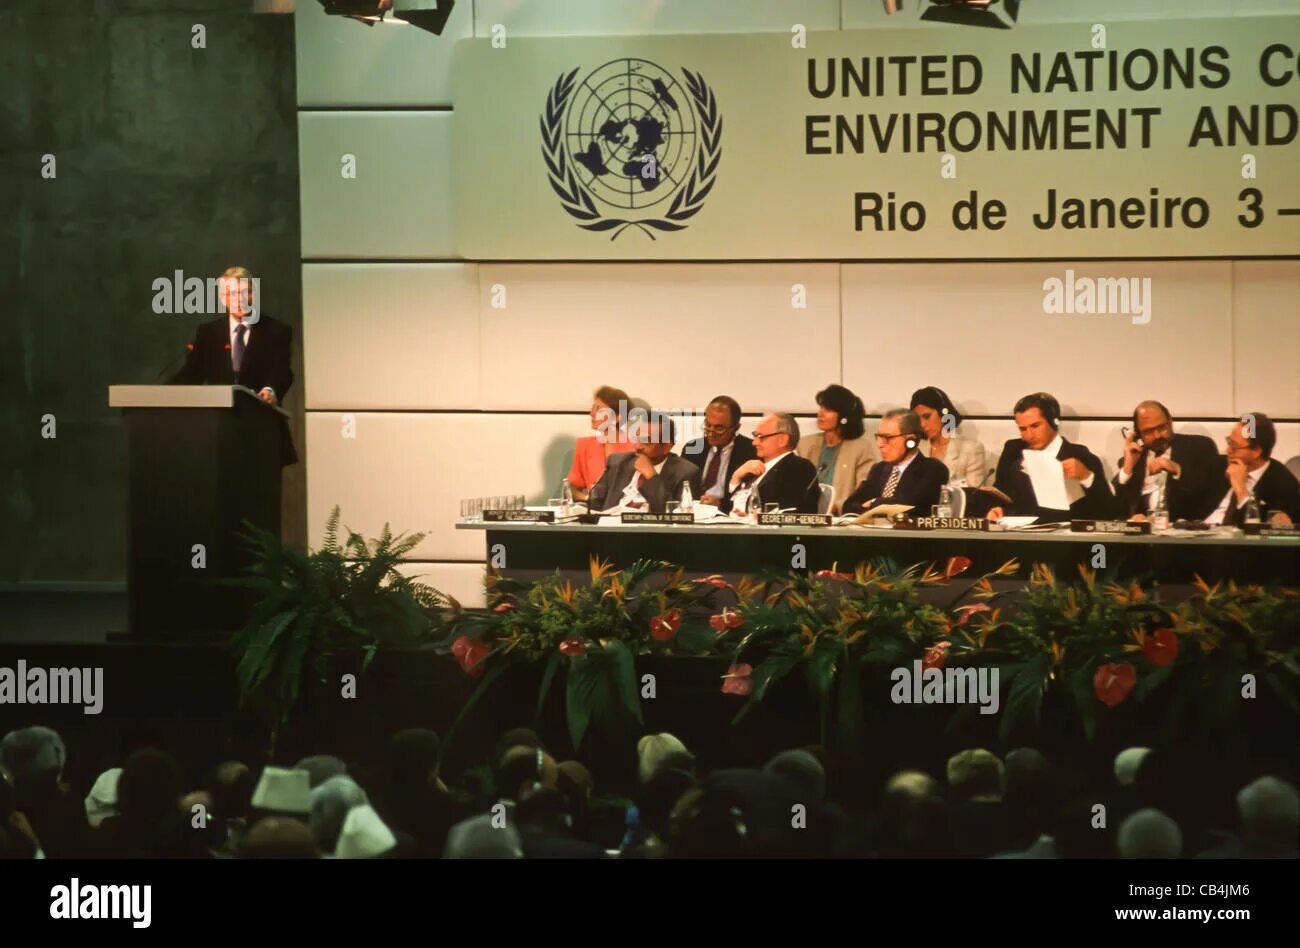 Конференция ООН В Рио де Жанейро 1992. Конференция ООН по окружающей среде и развитию в Рио-де-Жанейро. Конференции ООН по окружающей среде в Рио-де-Жанейро (1992 г.)». Саммит в Рио де Жанейро 1992.